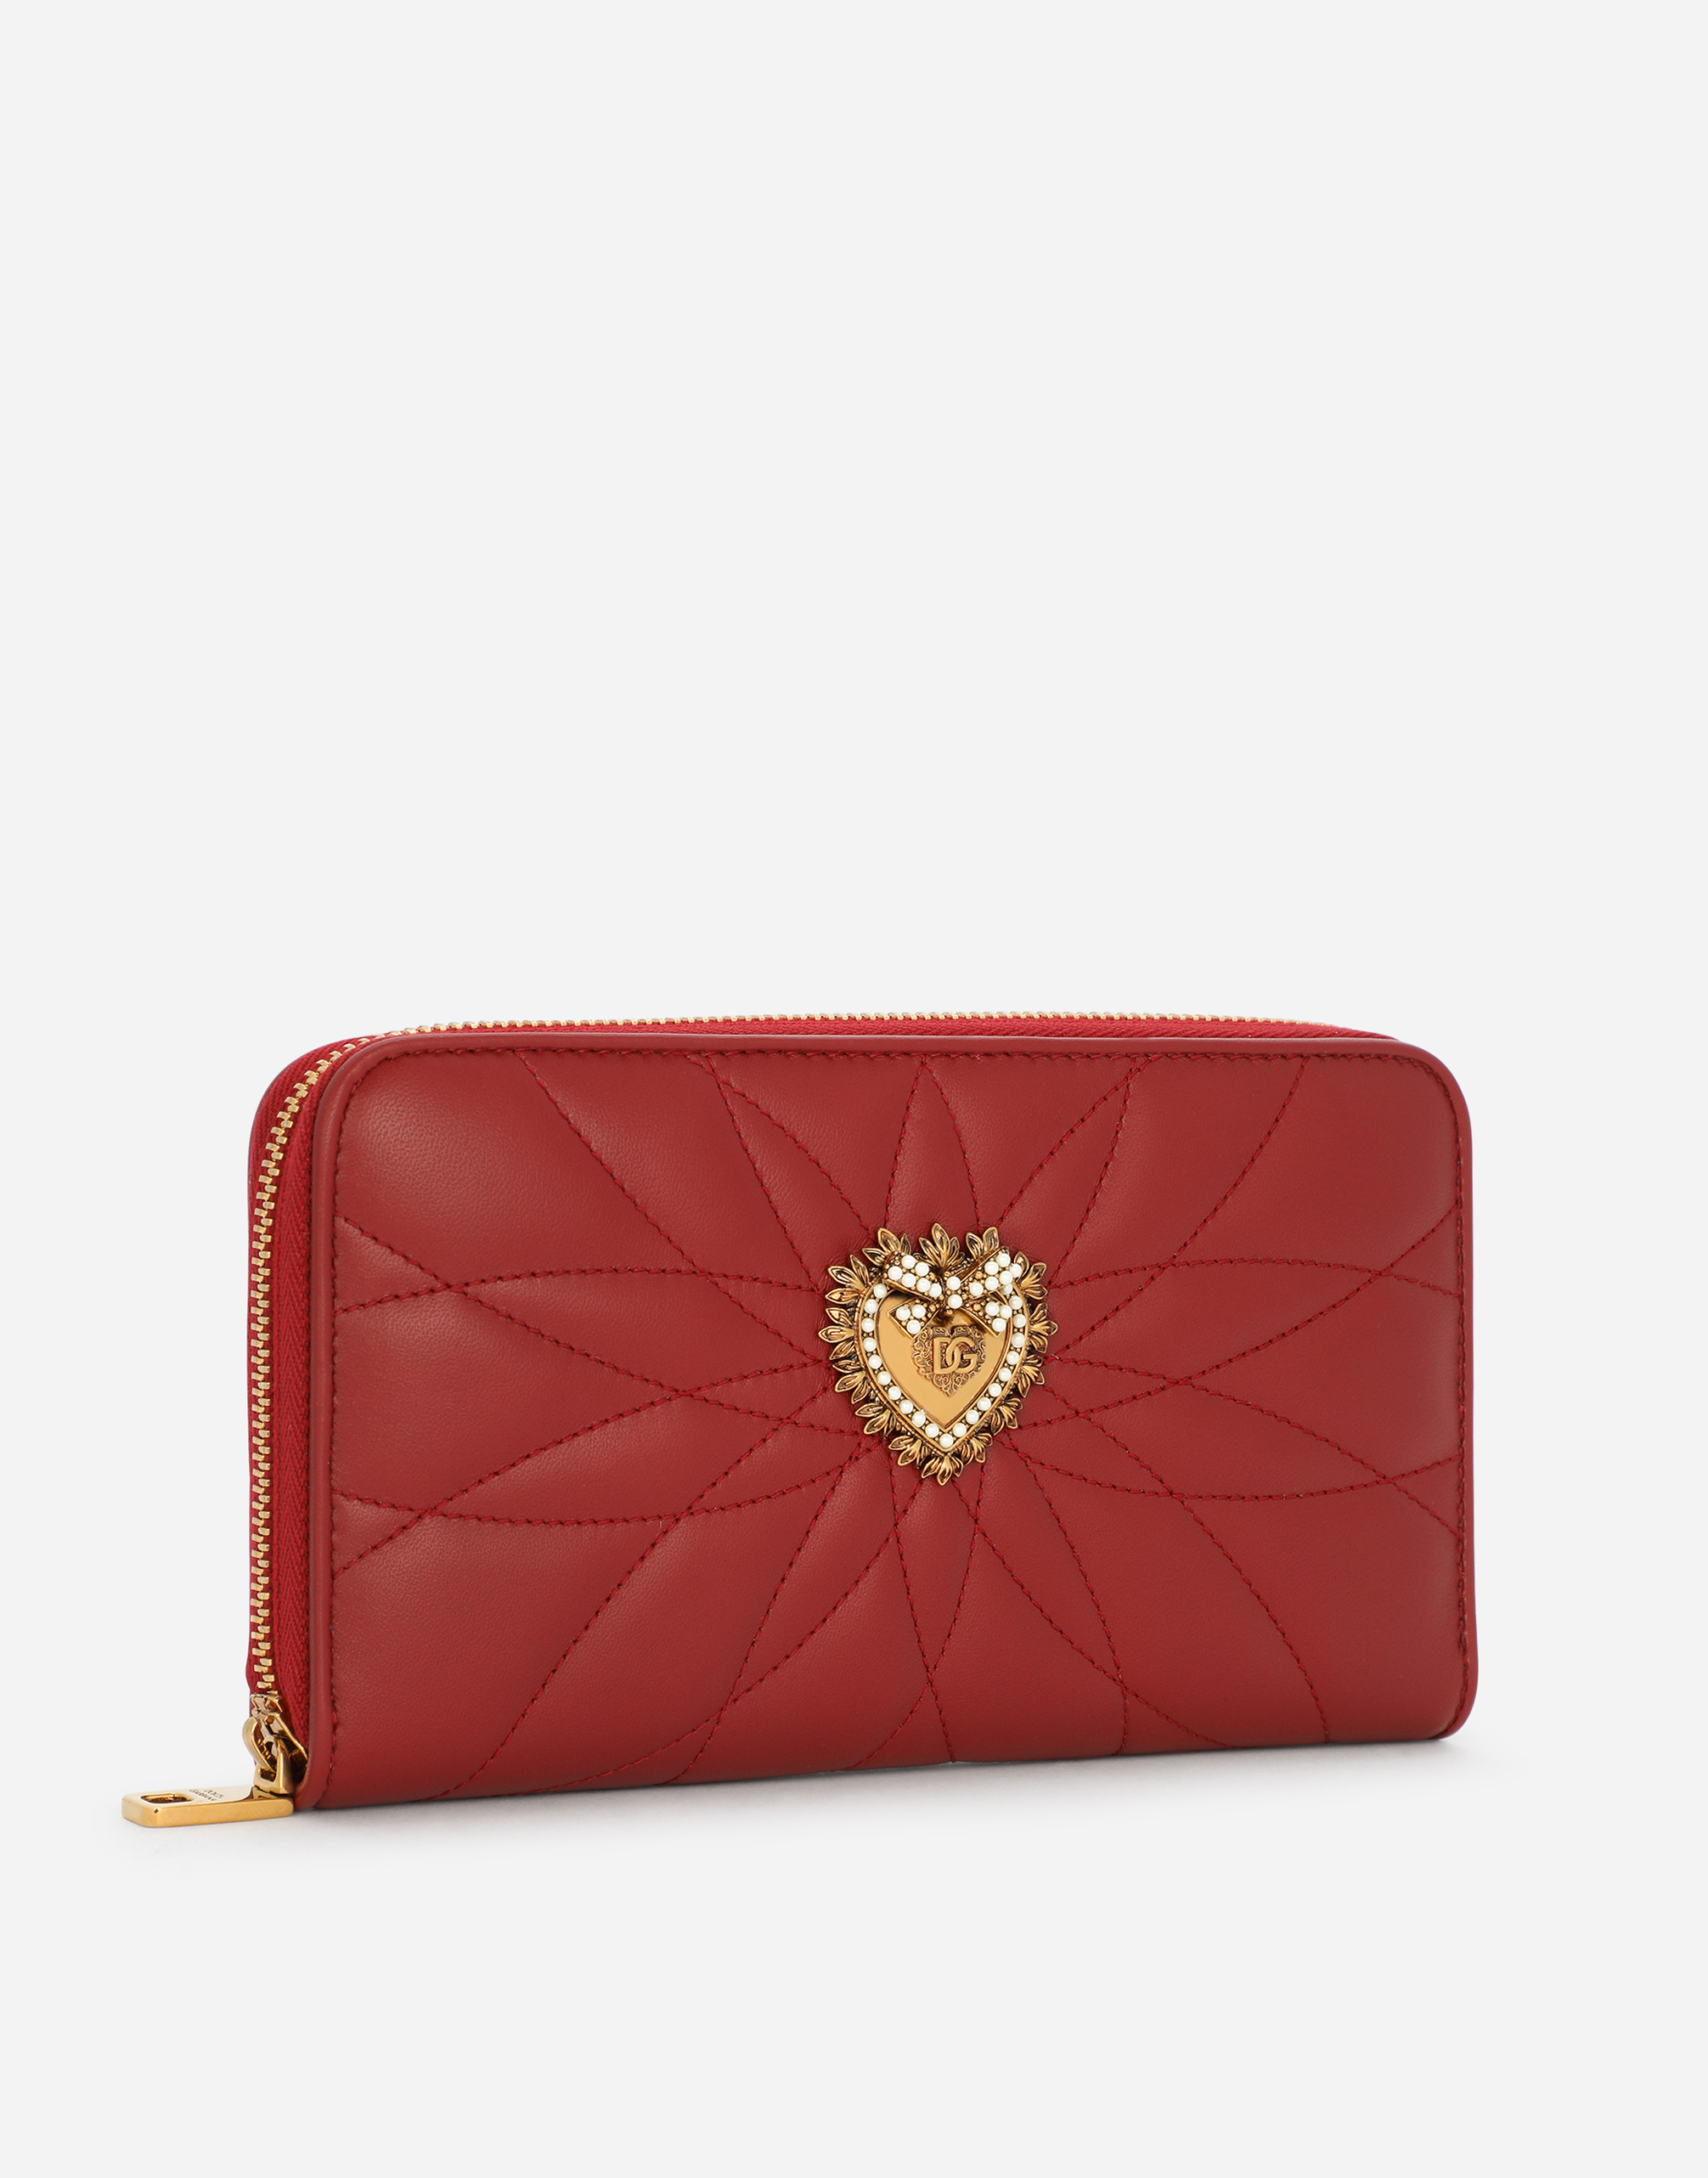 ZIPAROUND DEVOTION WALLET in RED | Dolce&Gabbana®